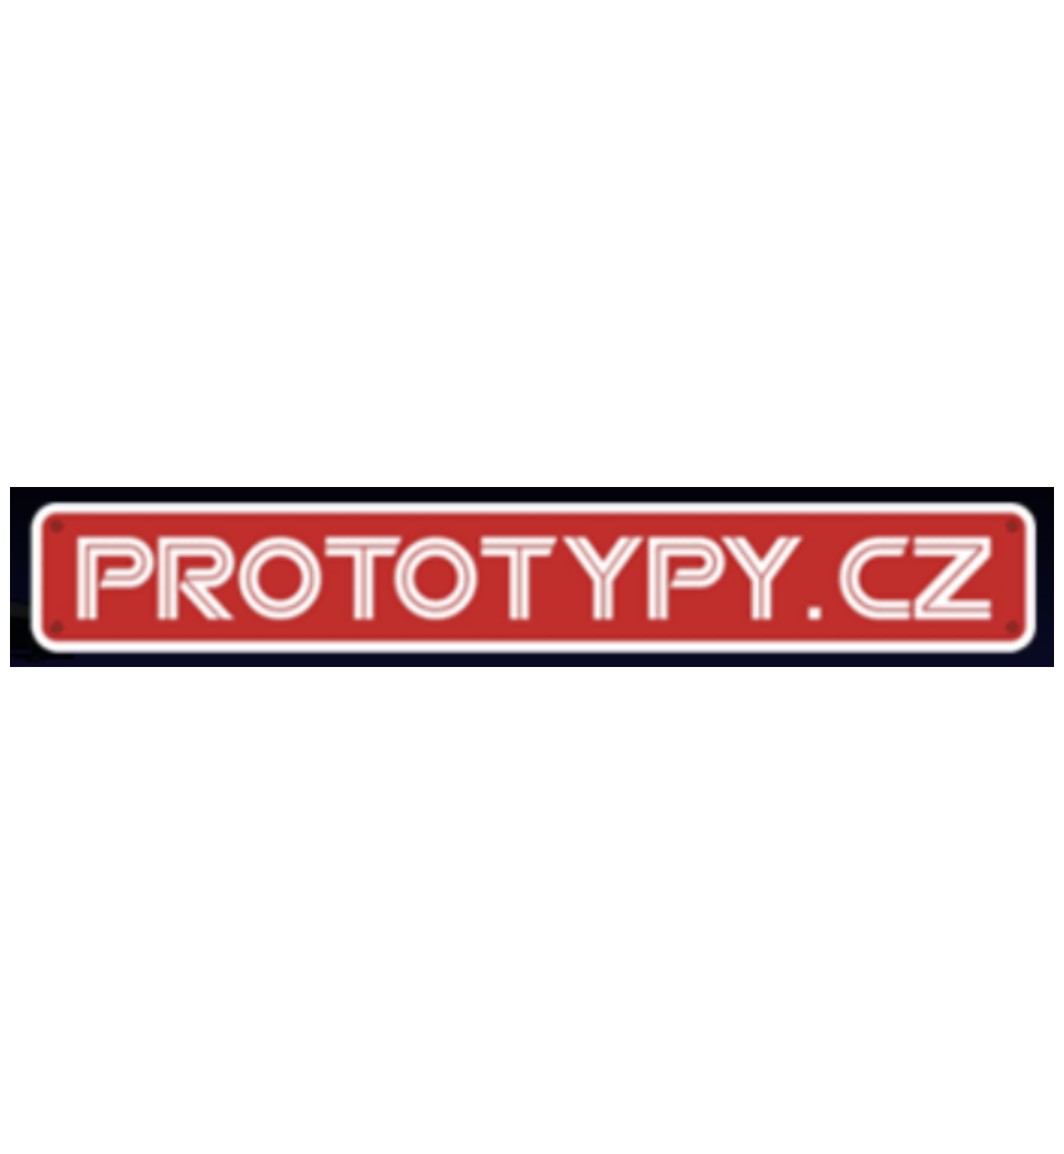 Prototypy.cz